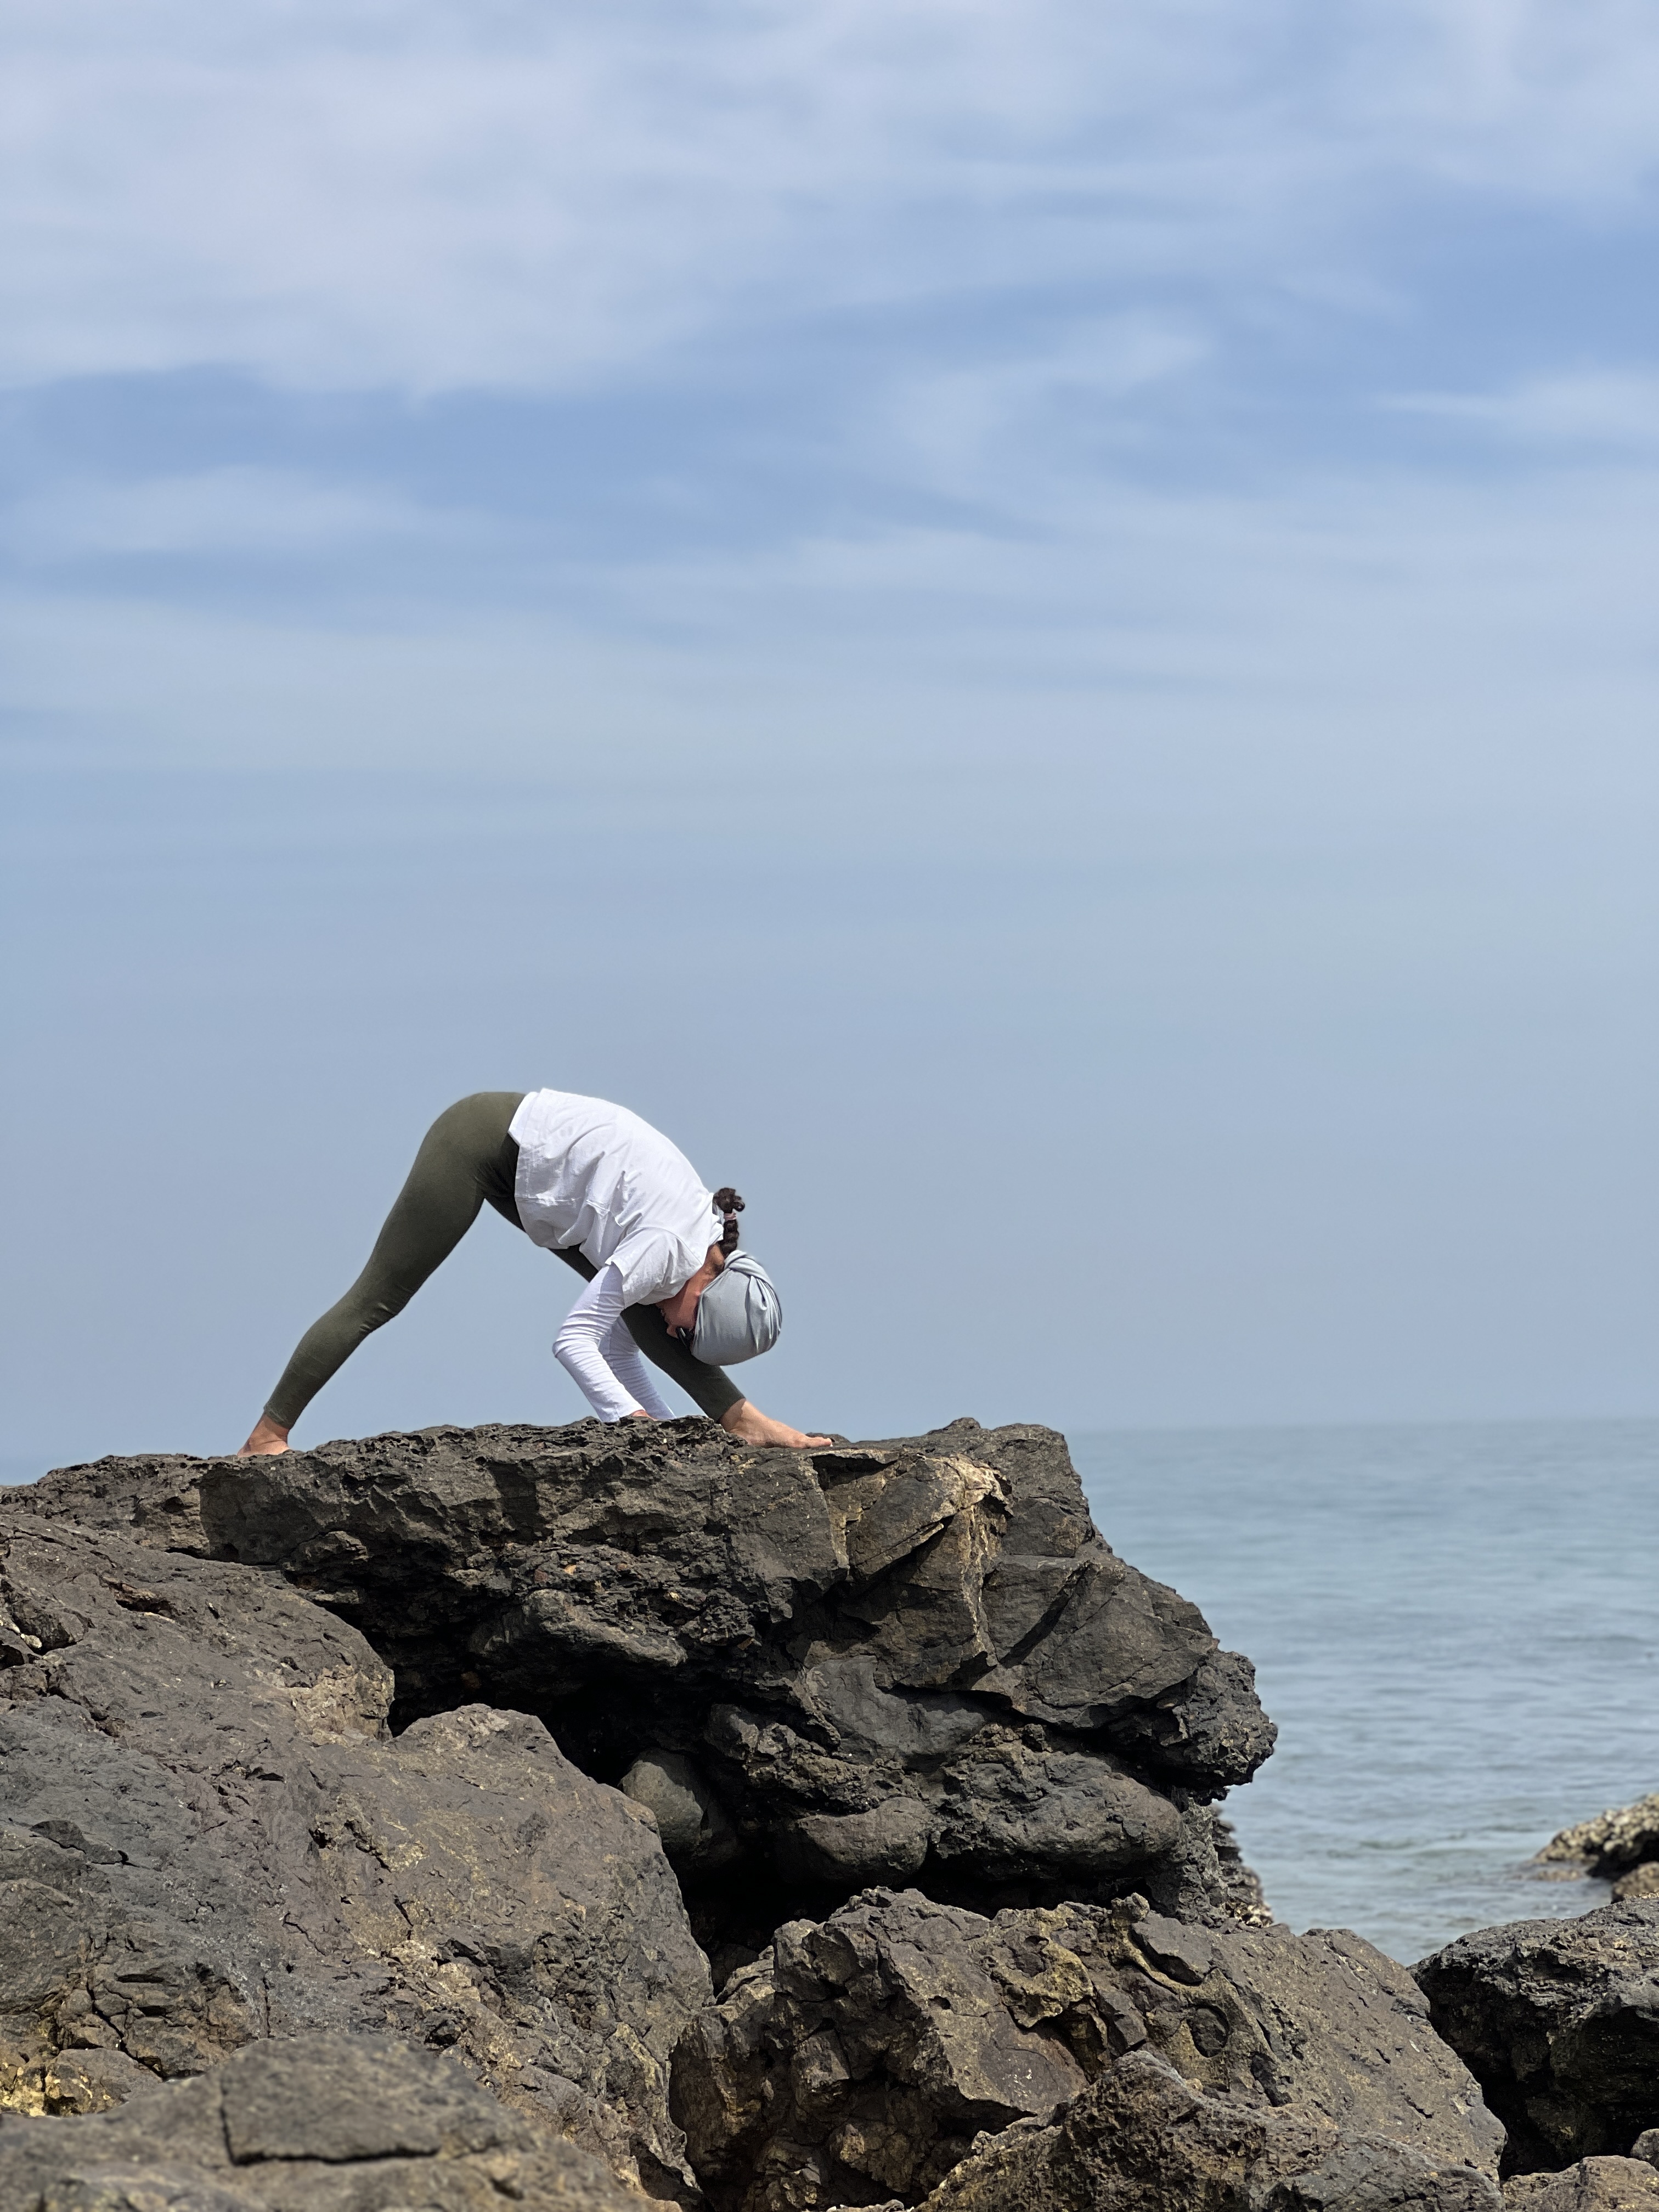 آرامش با یوگا - بهترین زمان برای تمرین یوگا برای کسب آرامش